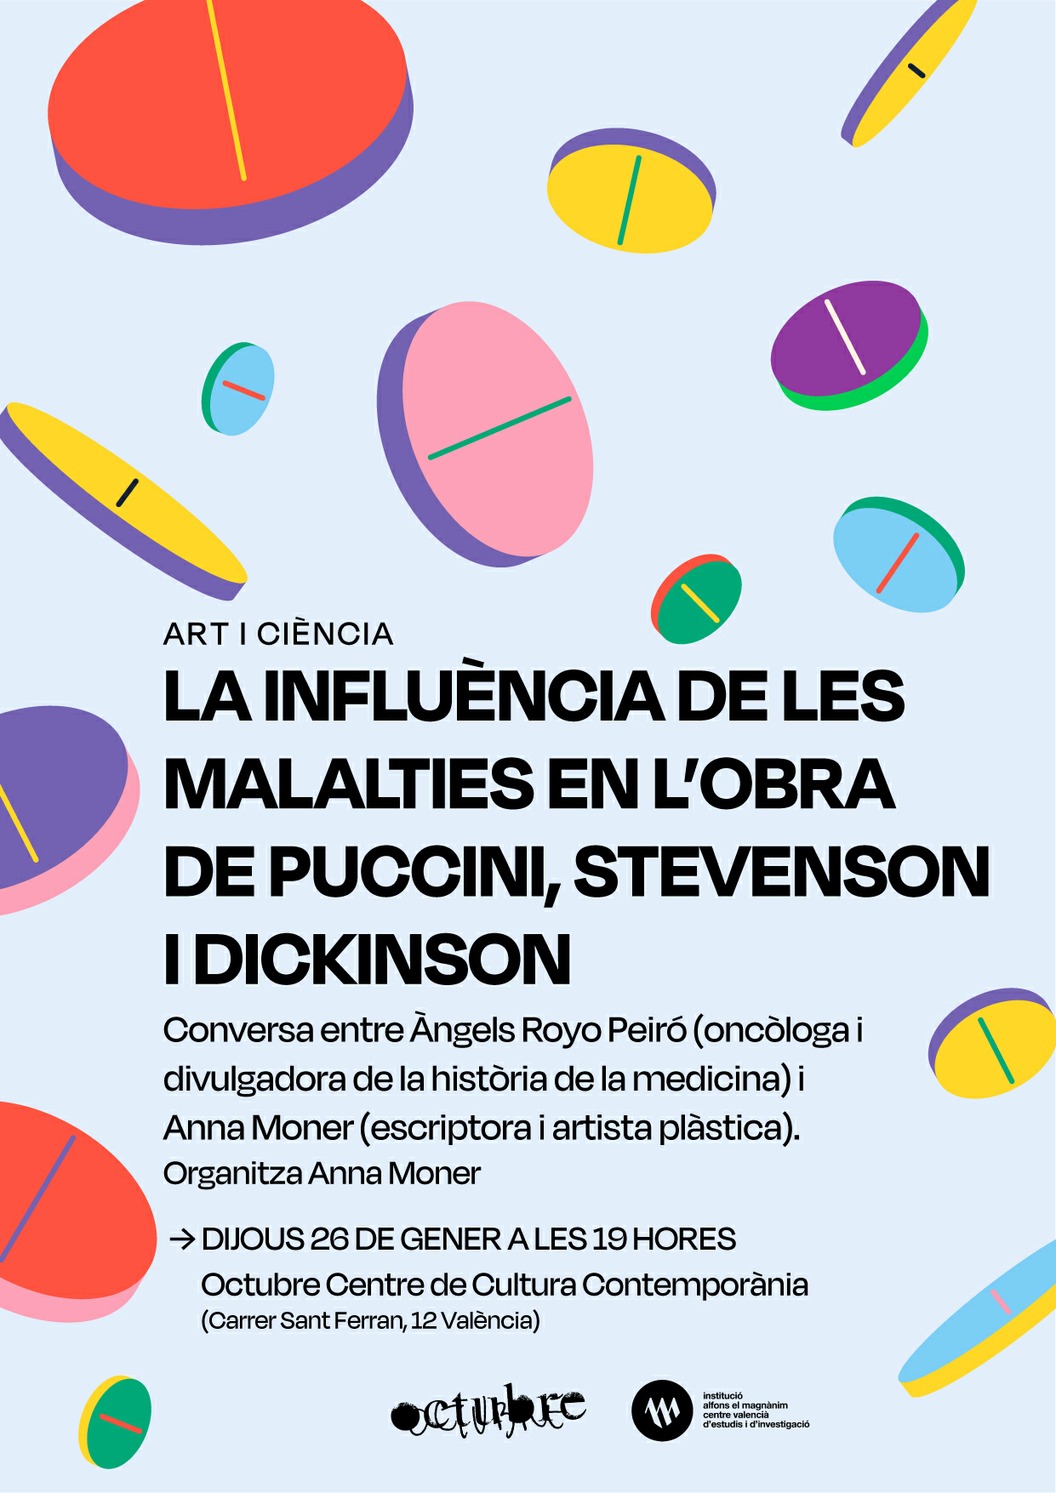 Art i ciència: la influència de les malalties en l’obra de Puccini, Stevenson i Dickinson